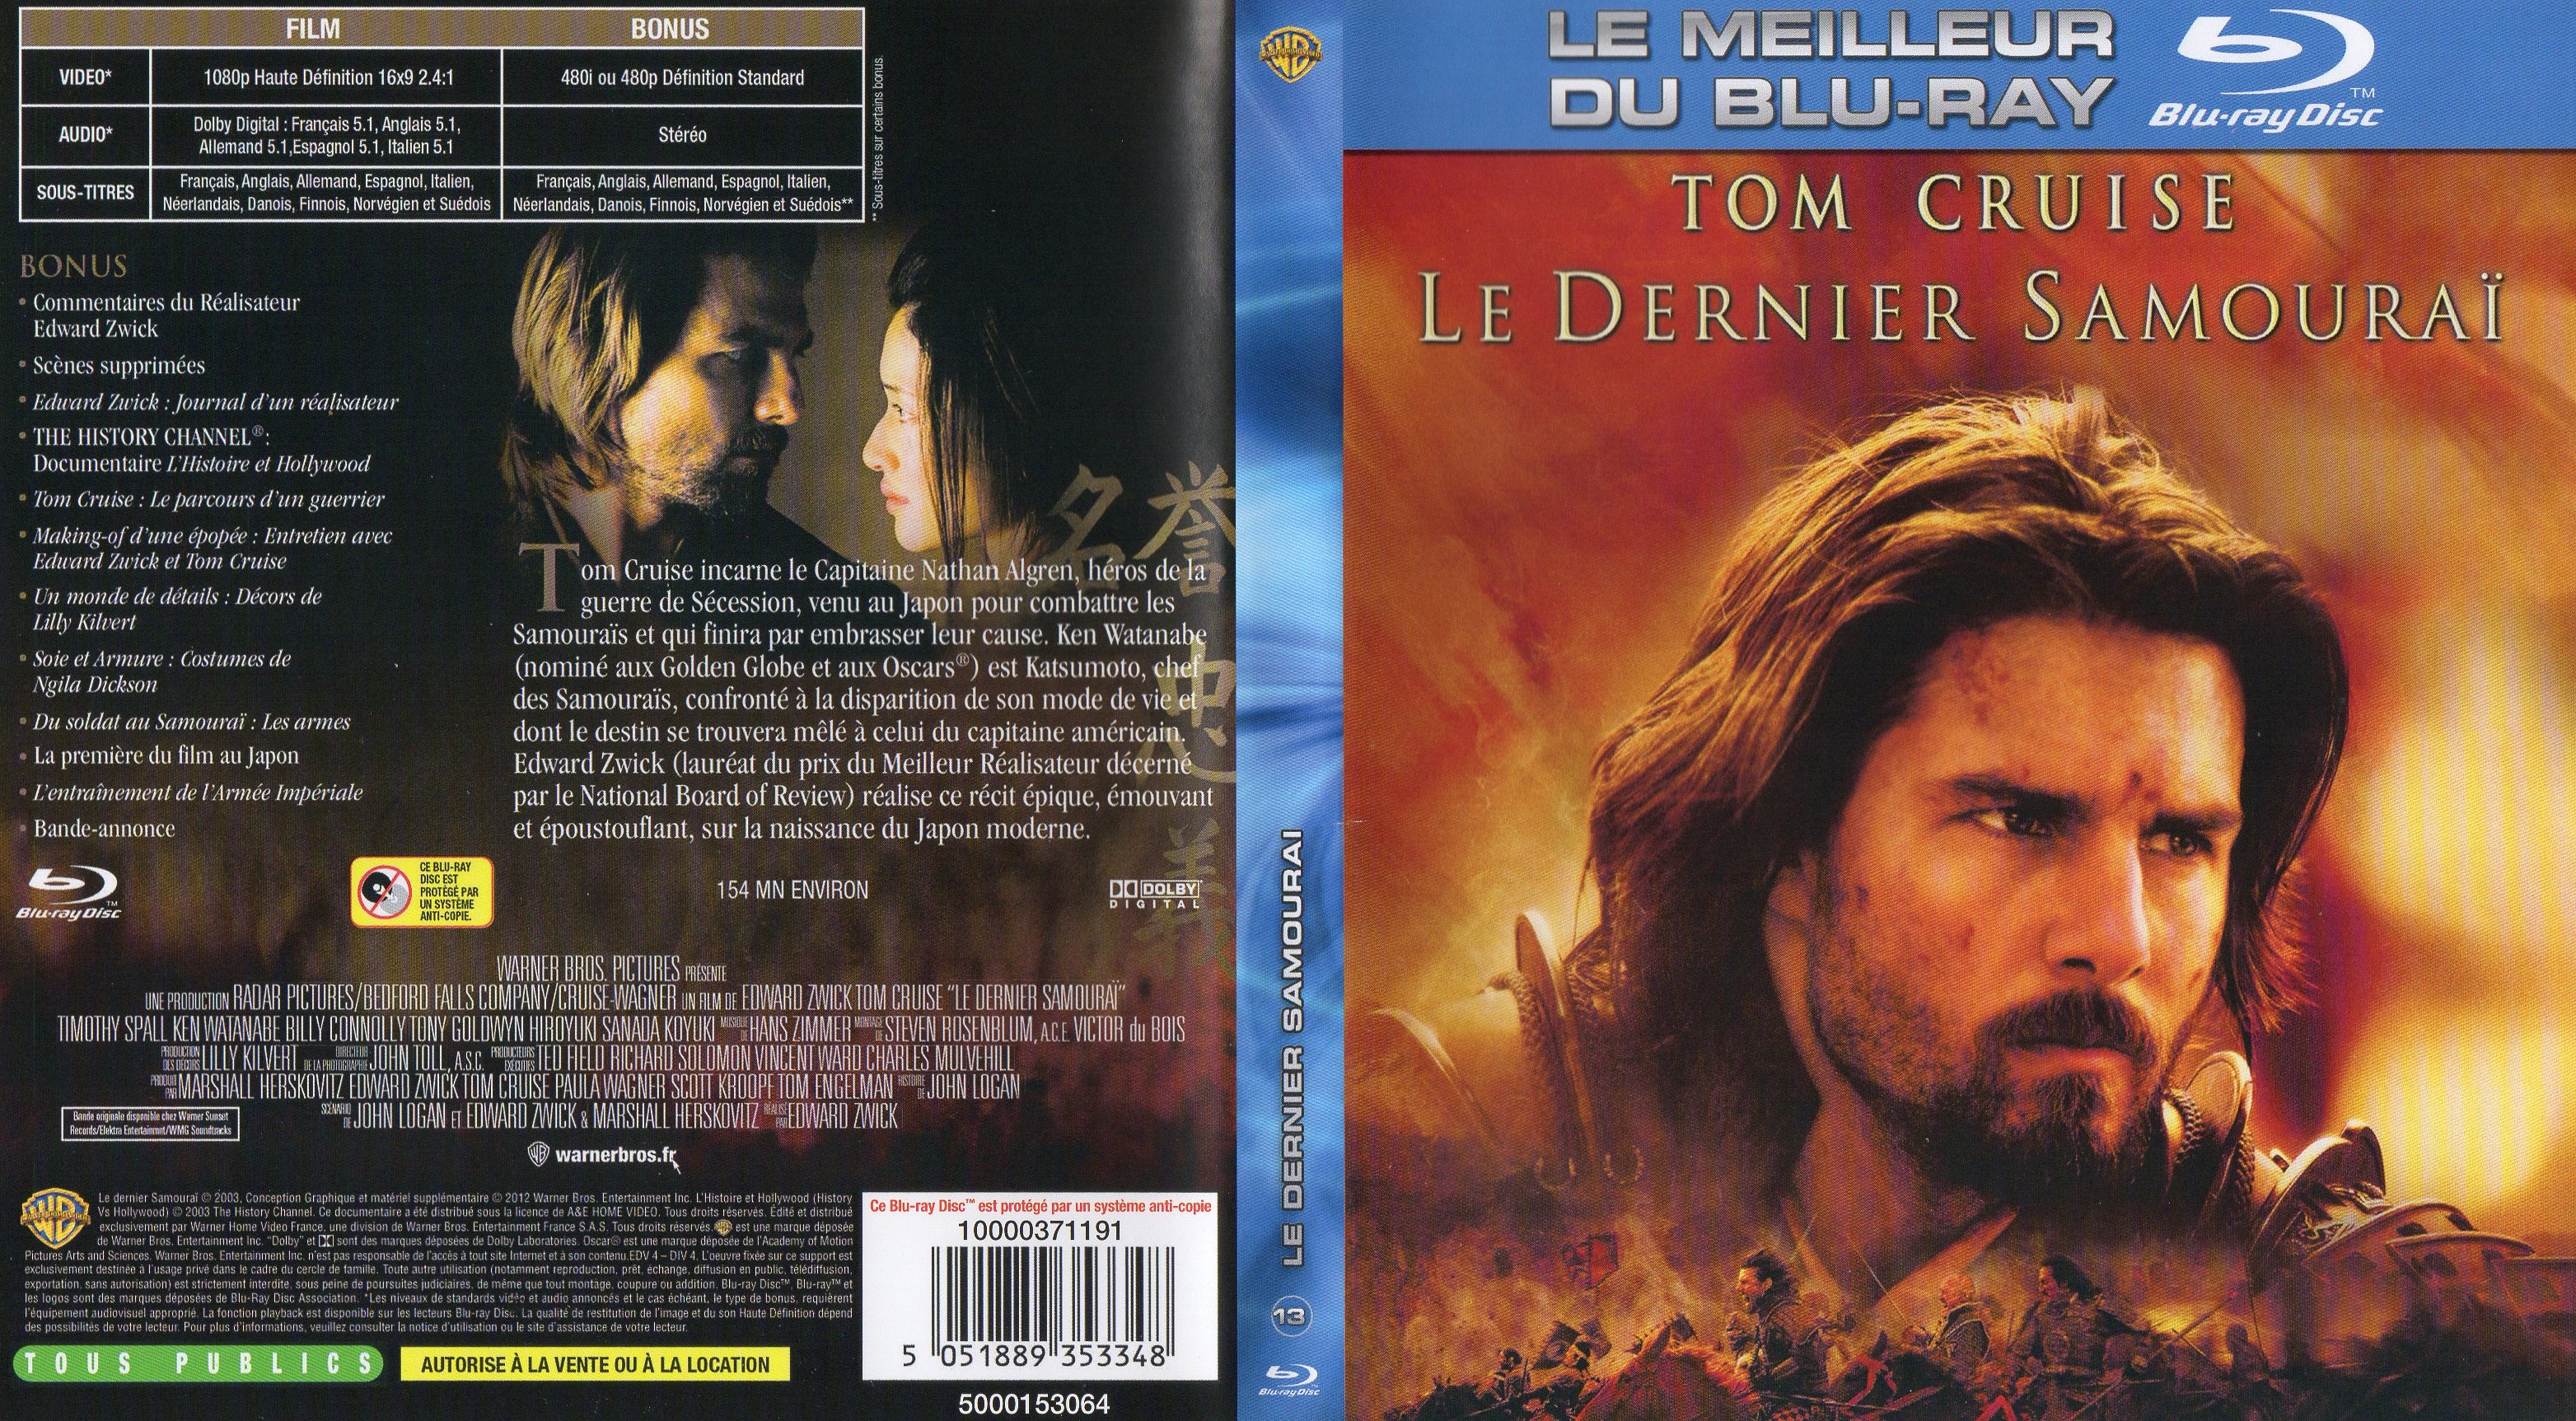 Jaquette DVD Le dernier samourai (BLU-RAY) v2